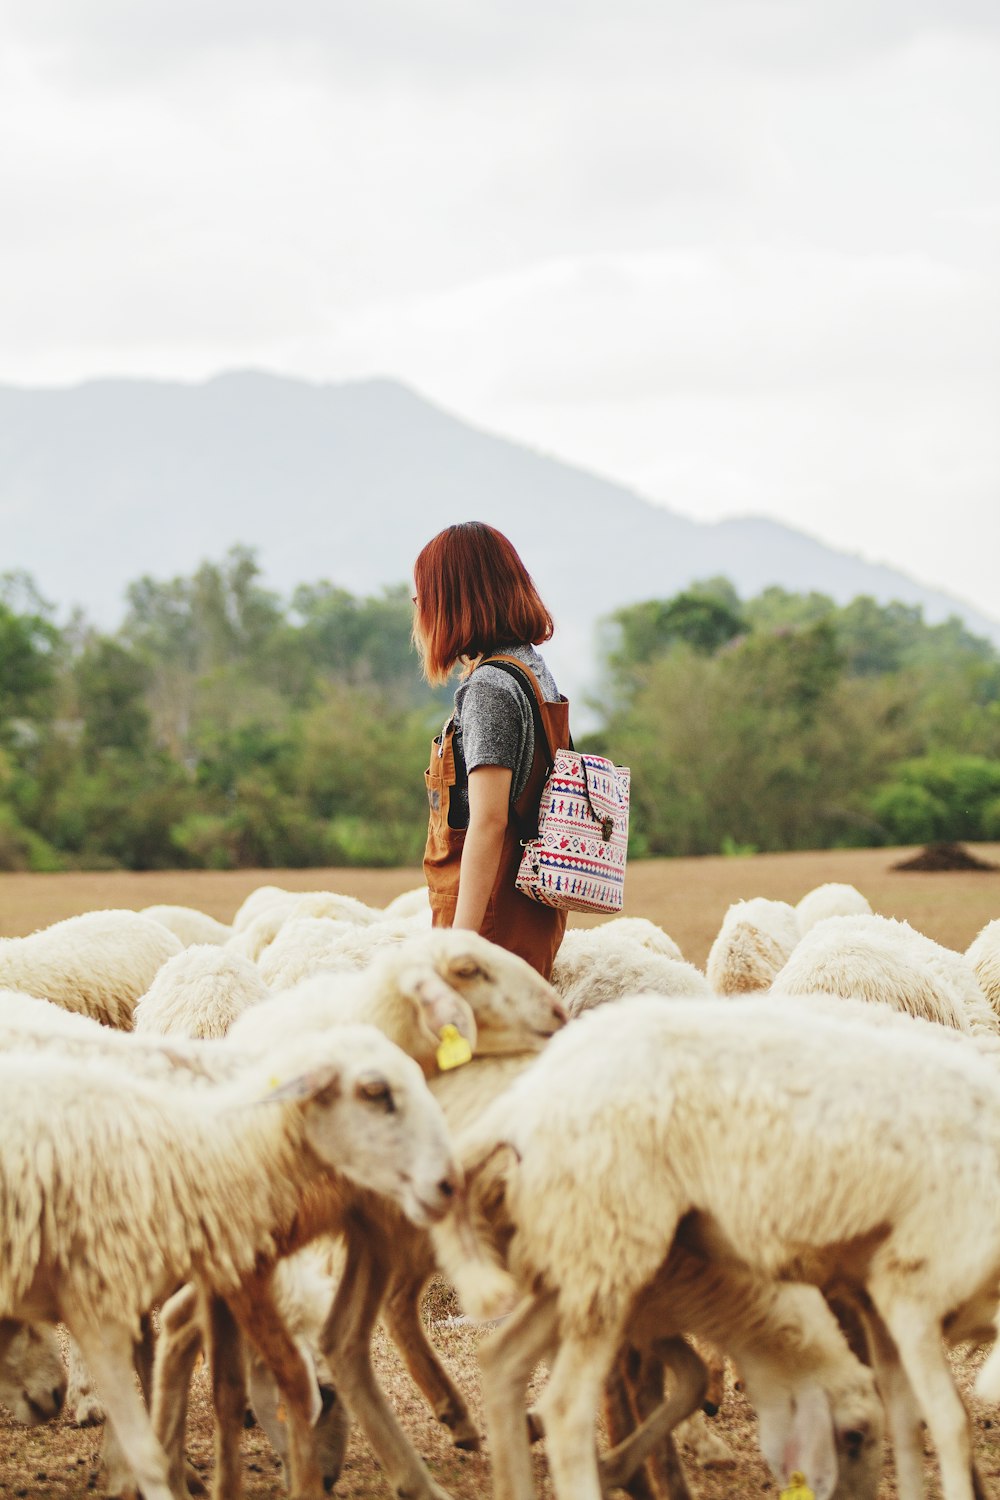 曇り空の下、羊に囲まれた女性